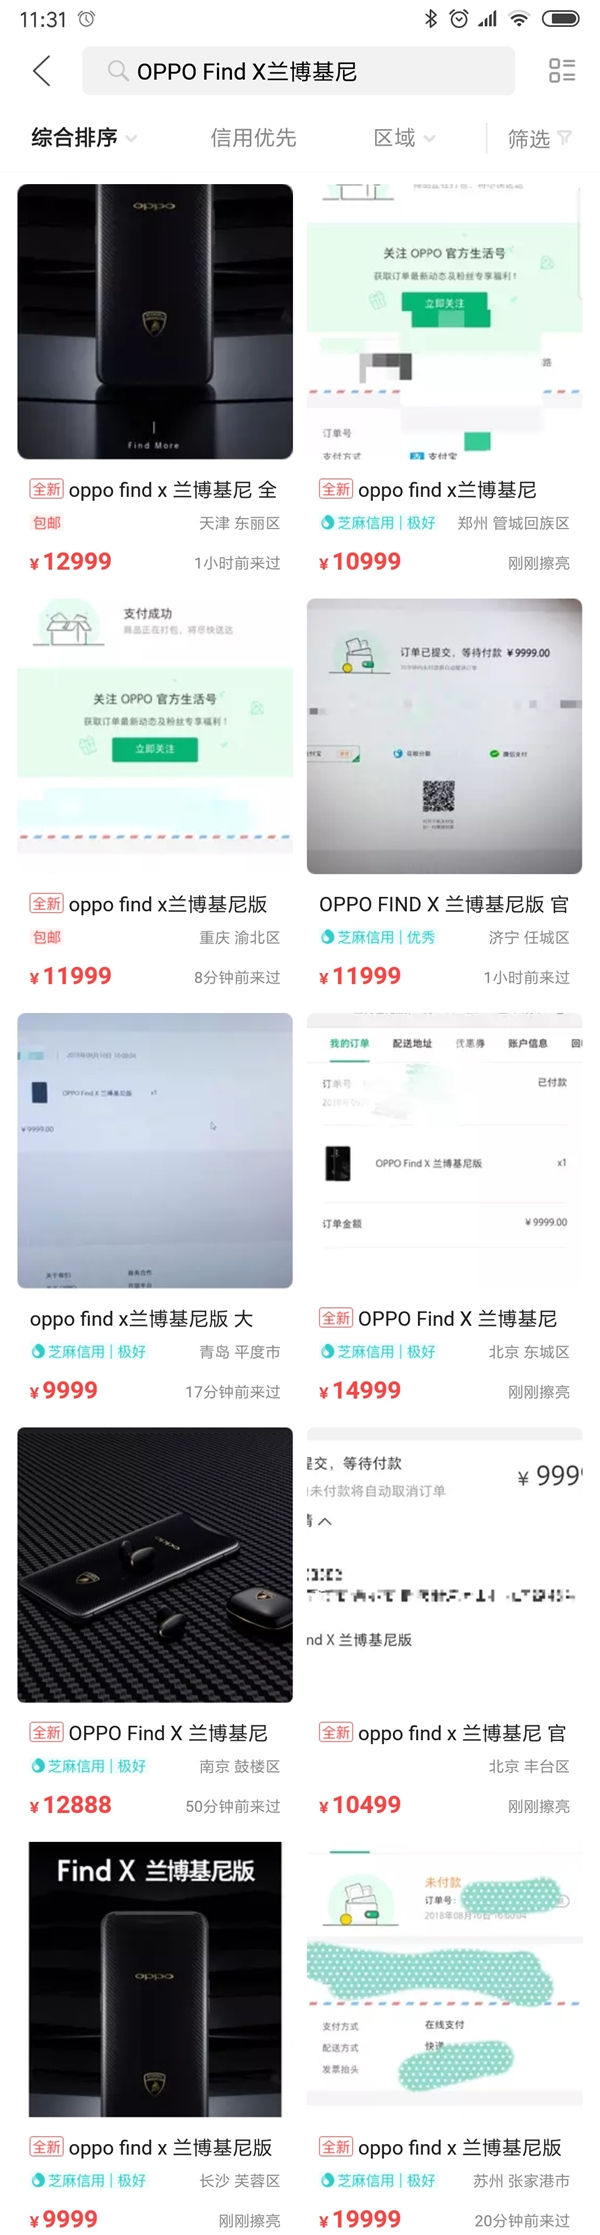 中国二手机械设备网，4 秒售罄 OPPO Find X 兰博基尼版闲鱼加价售卖